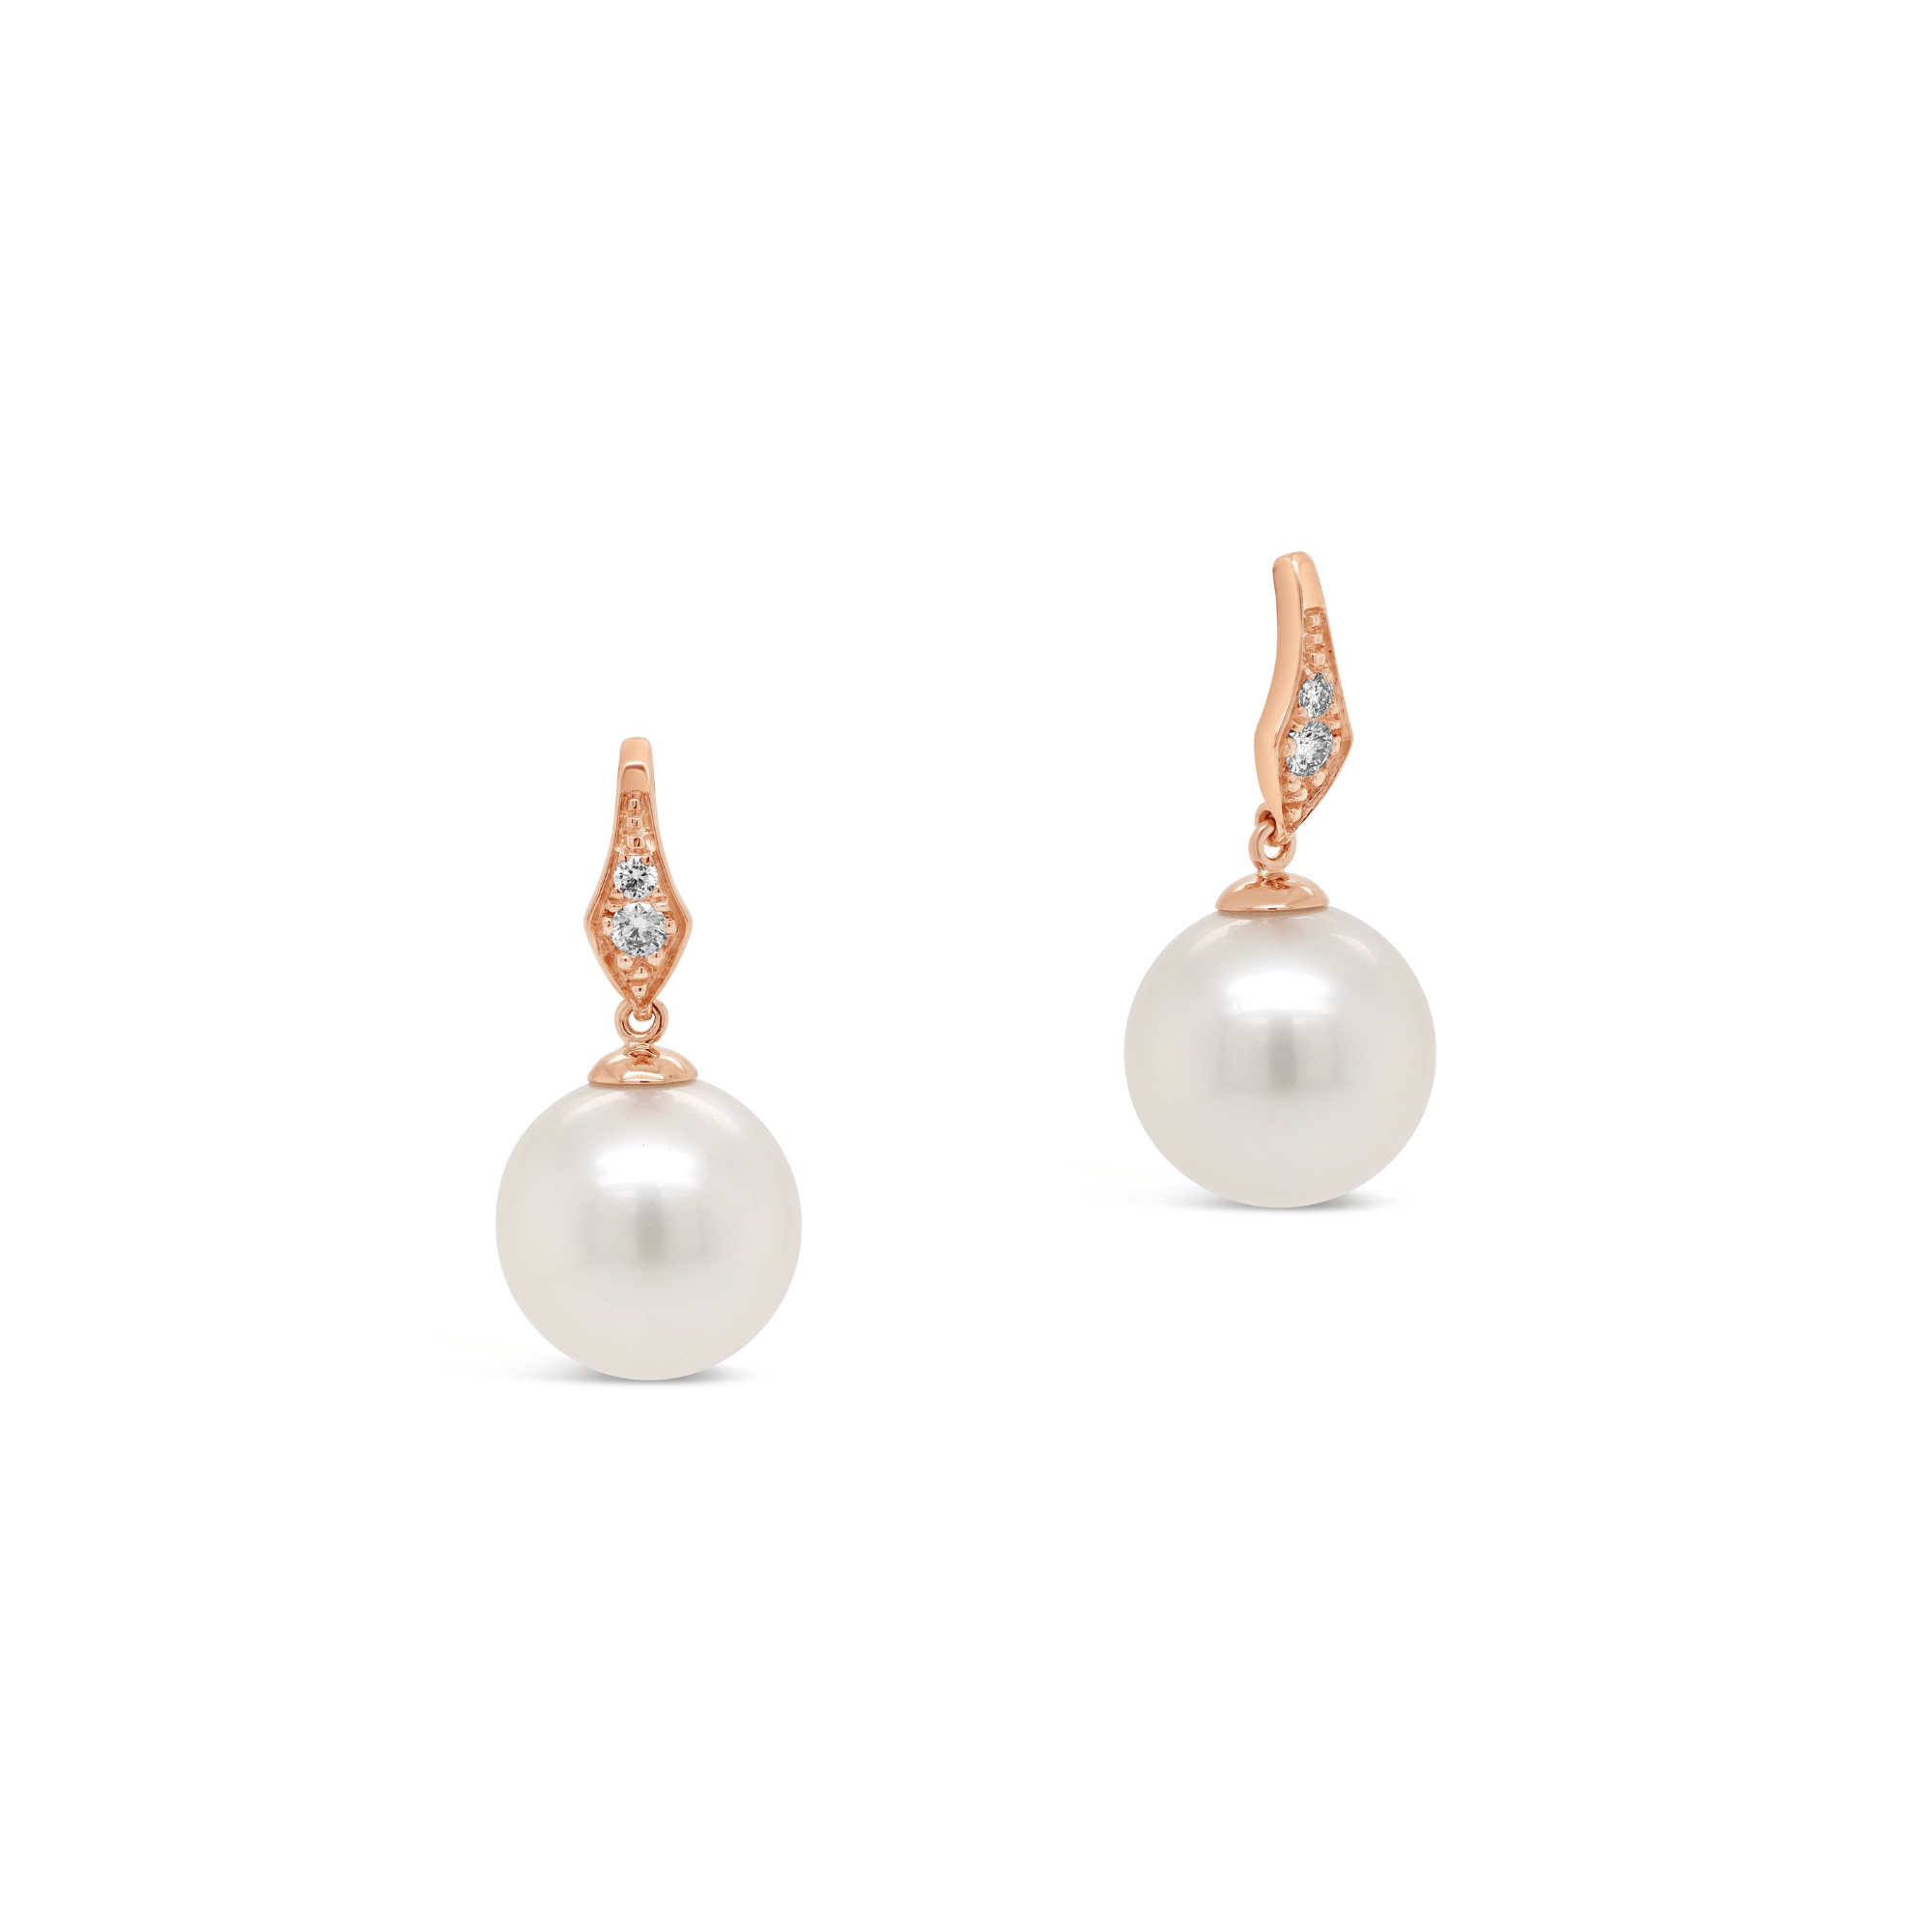 Buy Pearl Drop Earrings Online Australia  Akuna Pearls